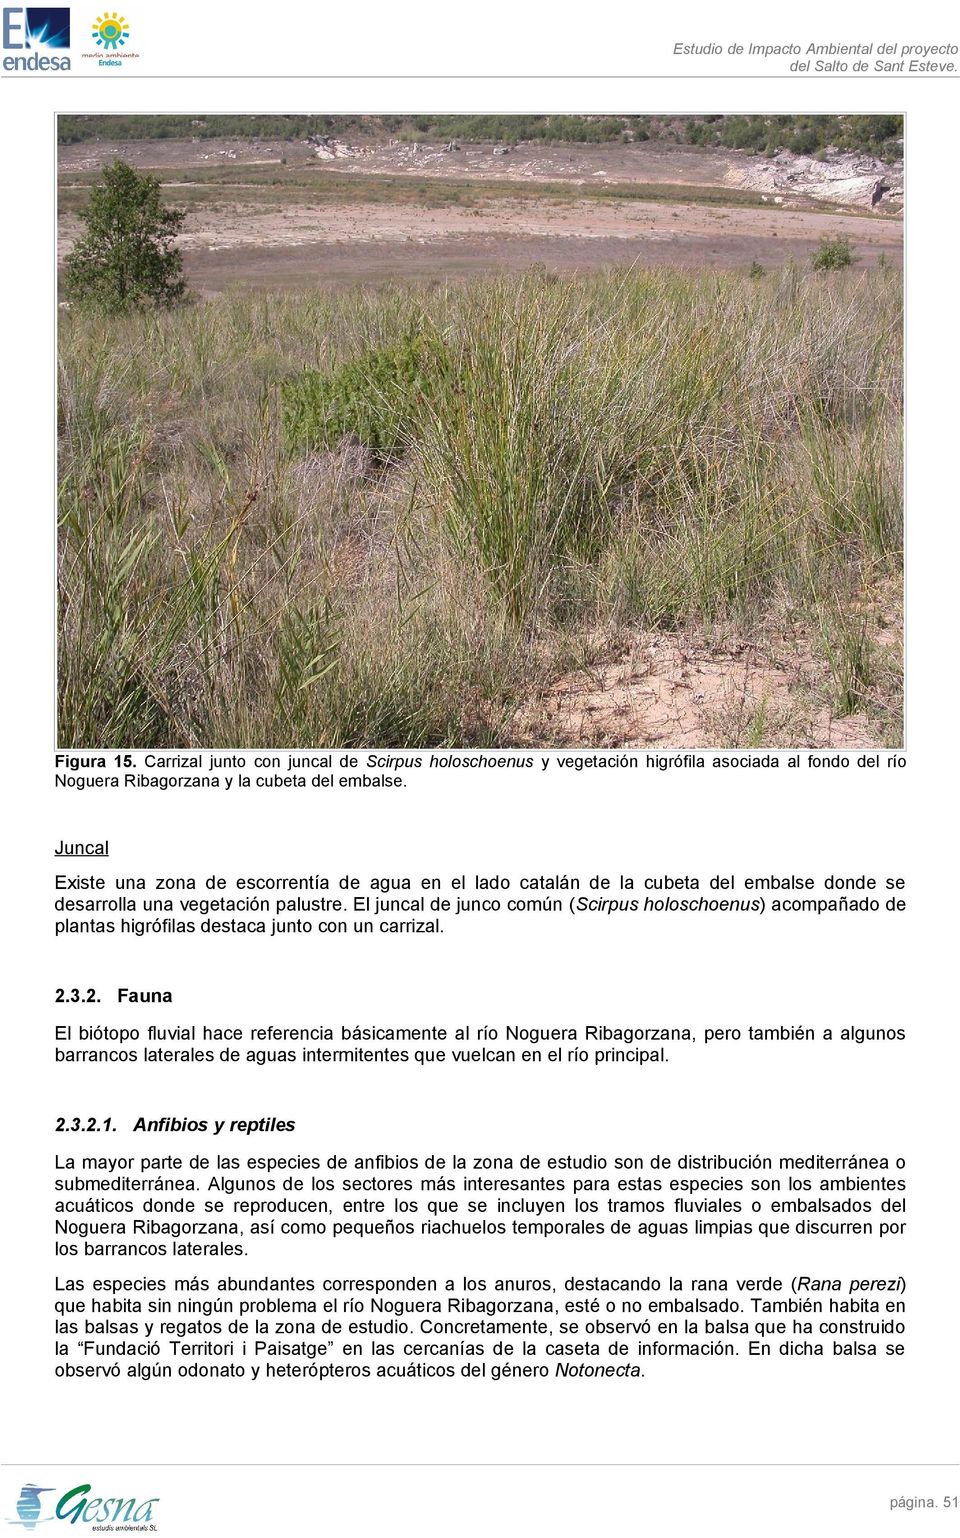 El juncal de junco común (Scirpus holoschoenus) acompañado de plantas higrófilas destaca junto con un carrizal. 2.